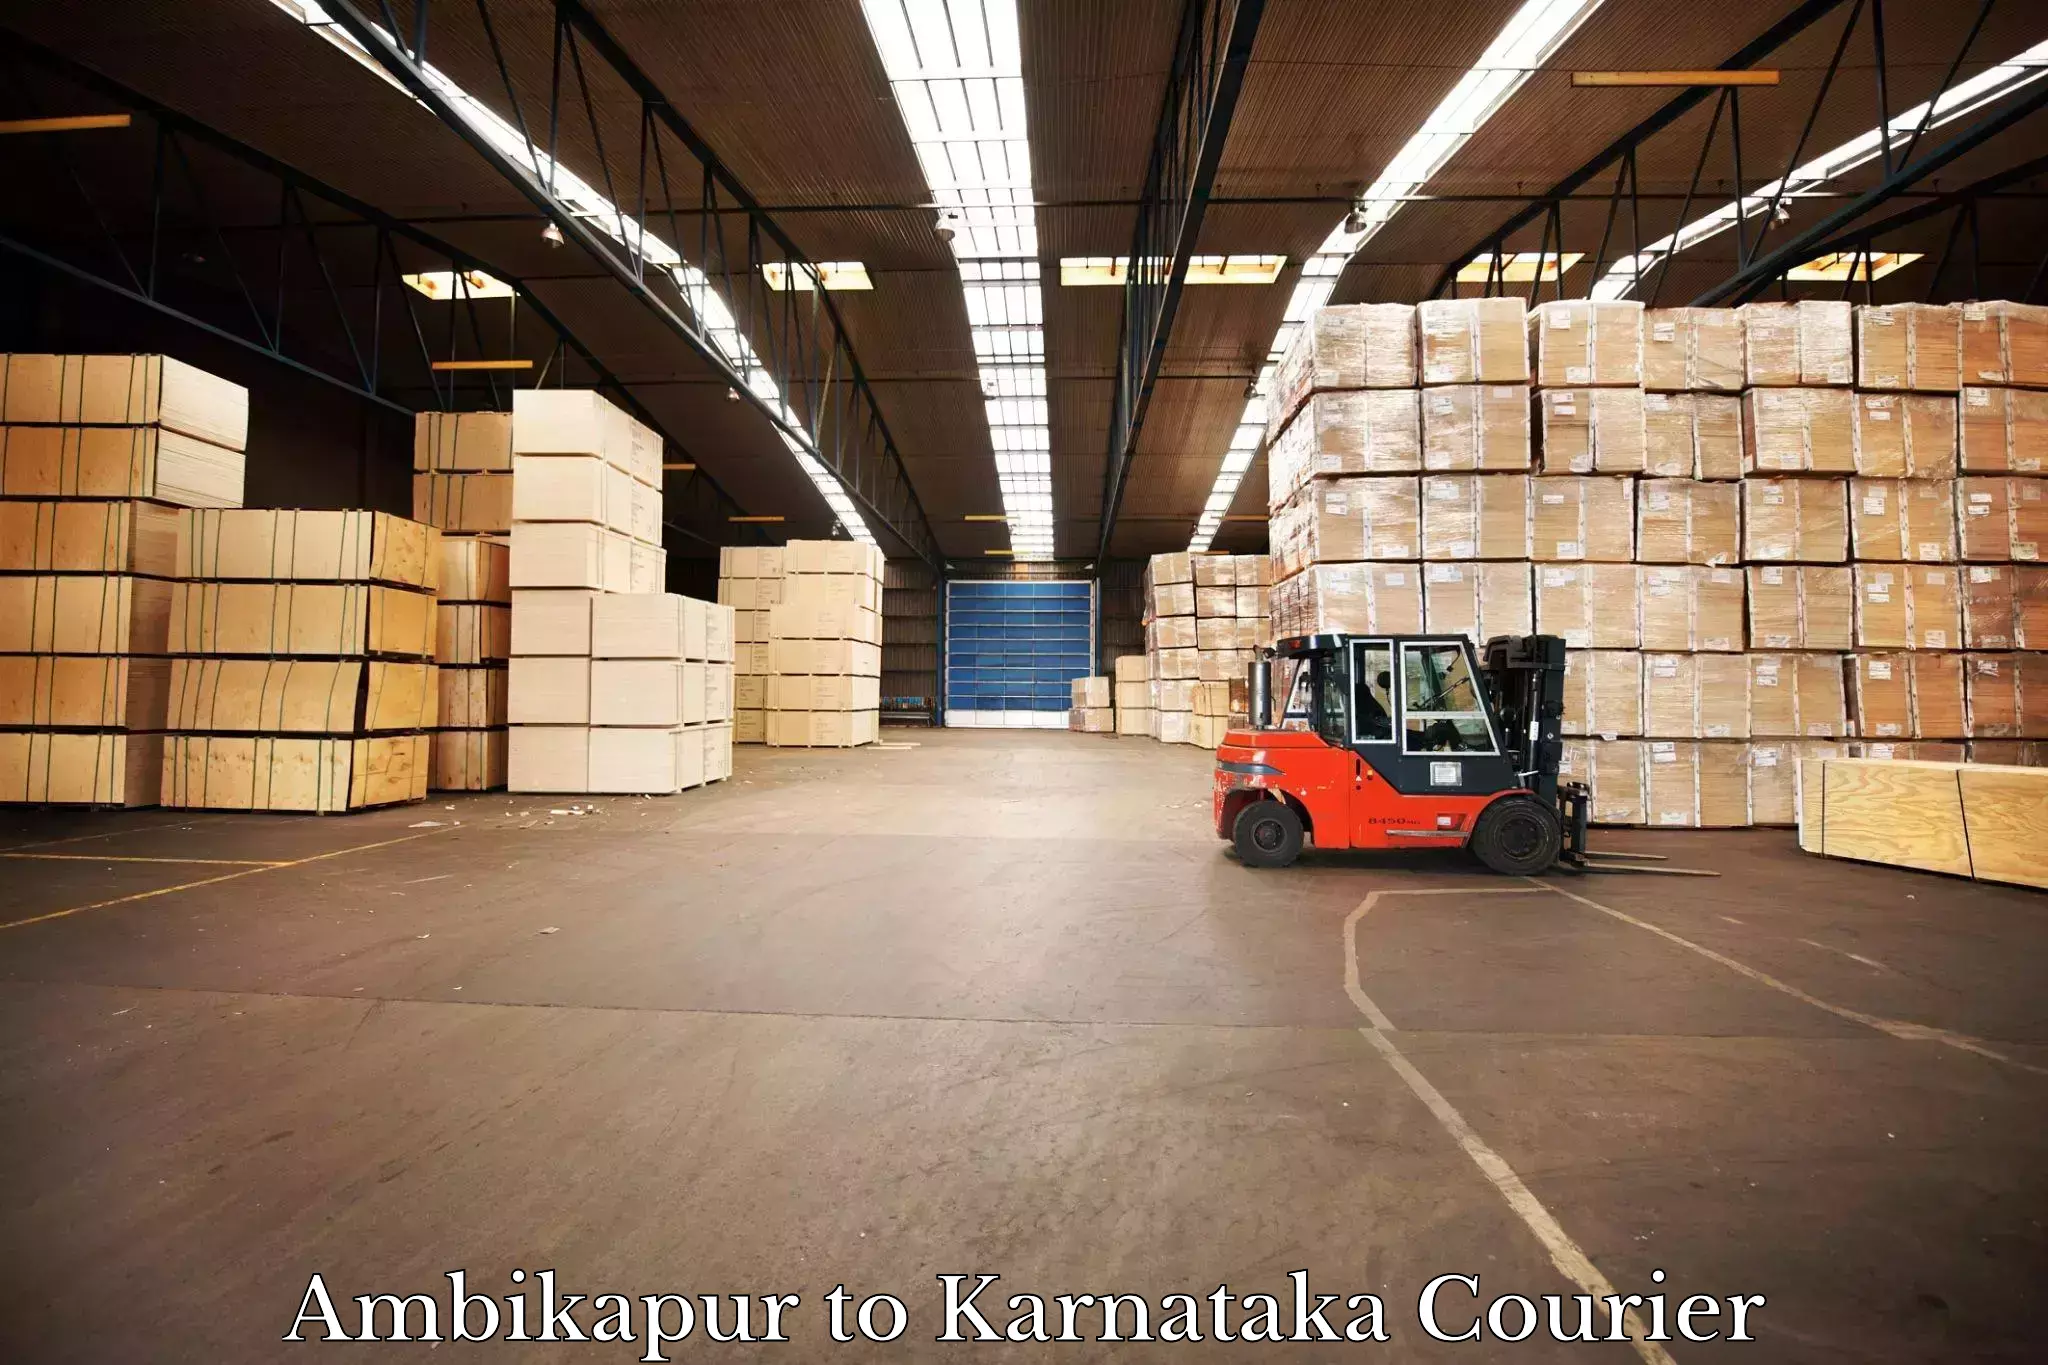 Digital courier platforms Ambikapur to Mangalore Port